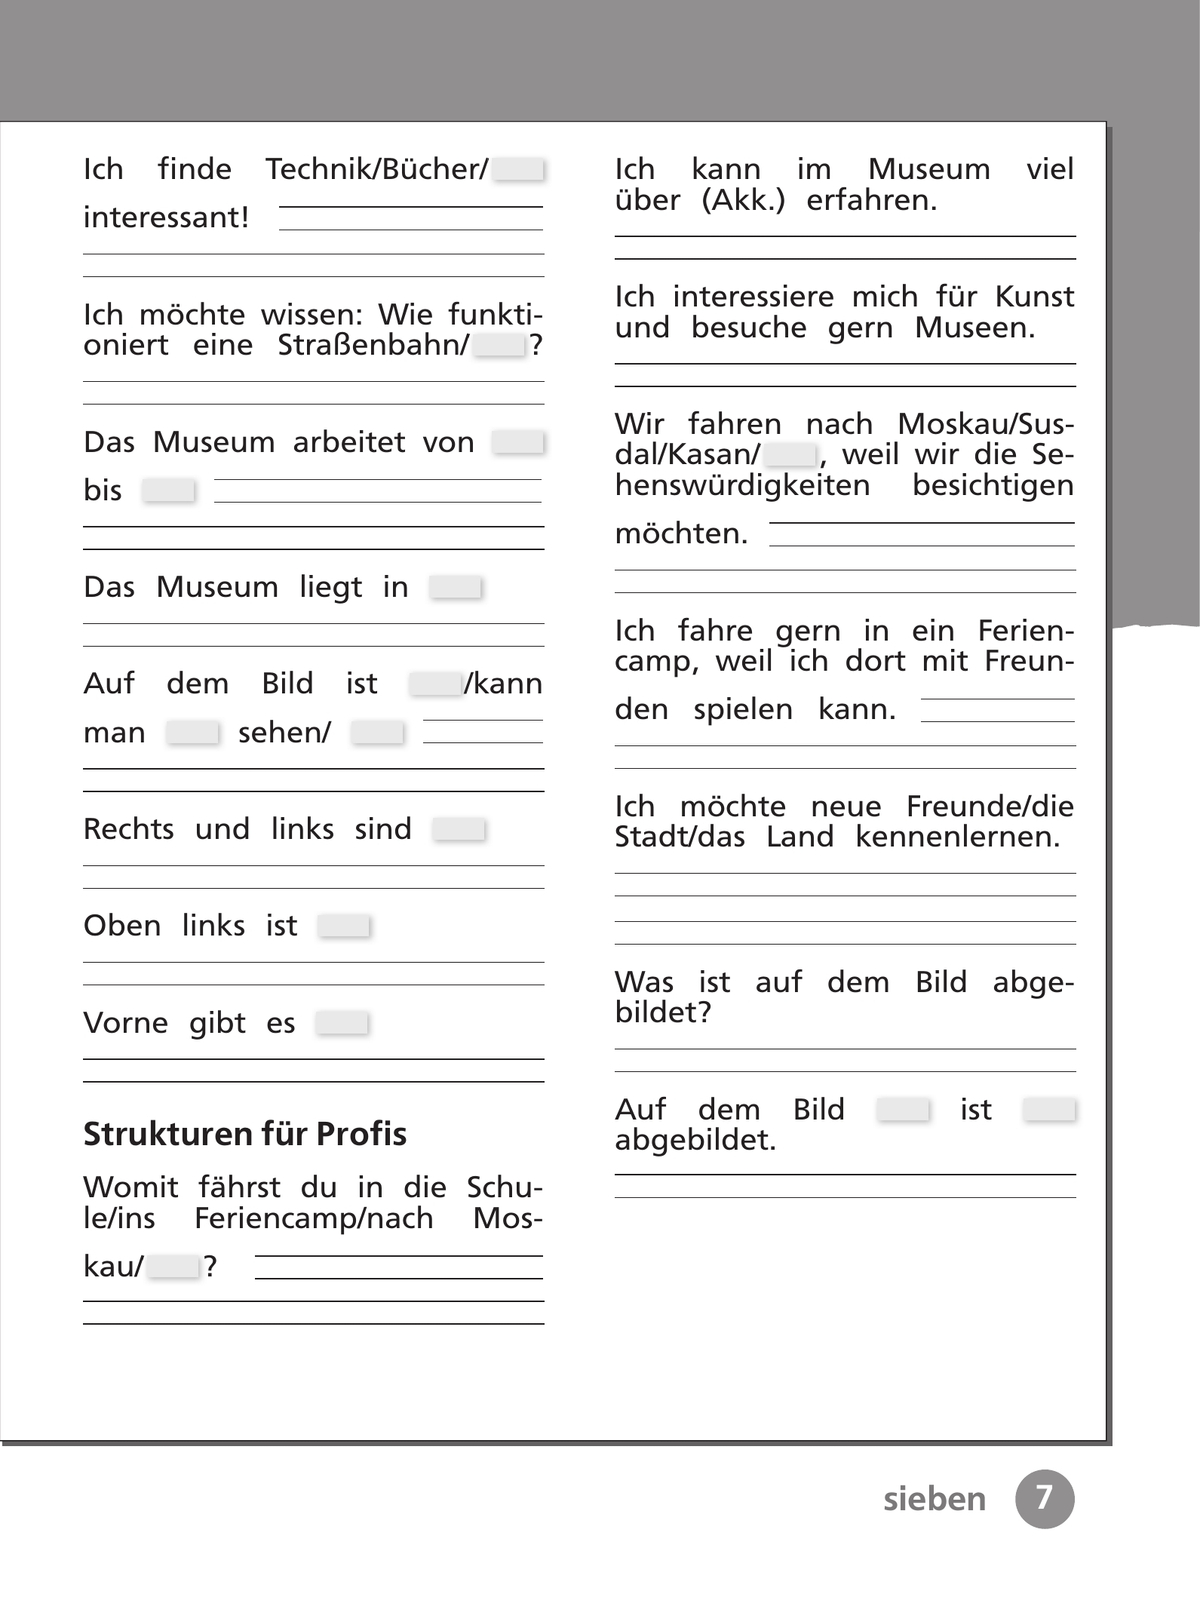 Немецкий язык. Рабочая тетрадь. 4 класс. В 2 ч. Часть 1 9